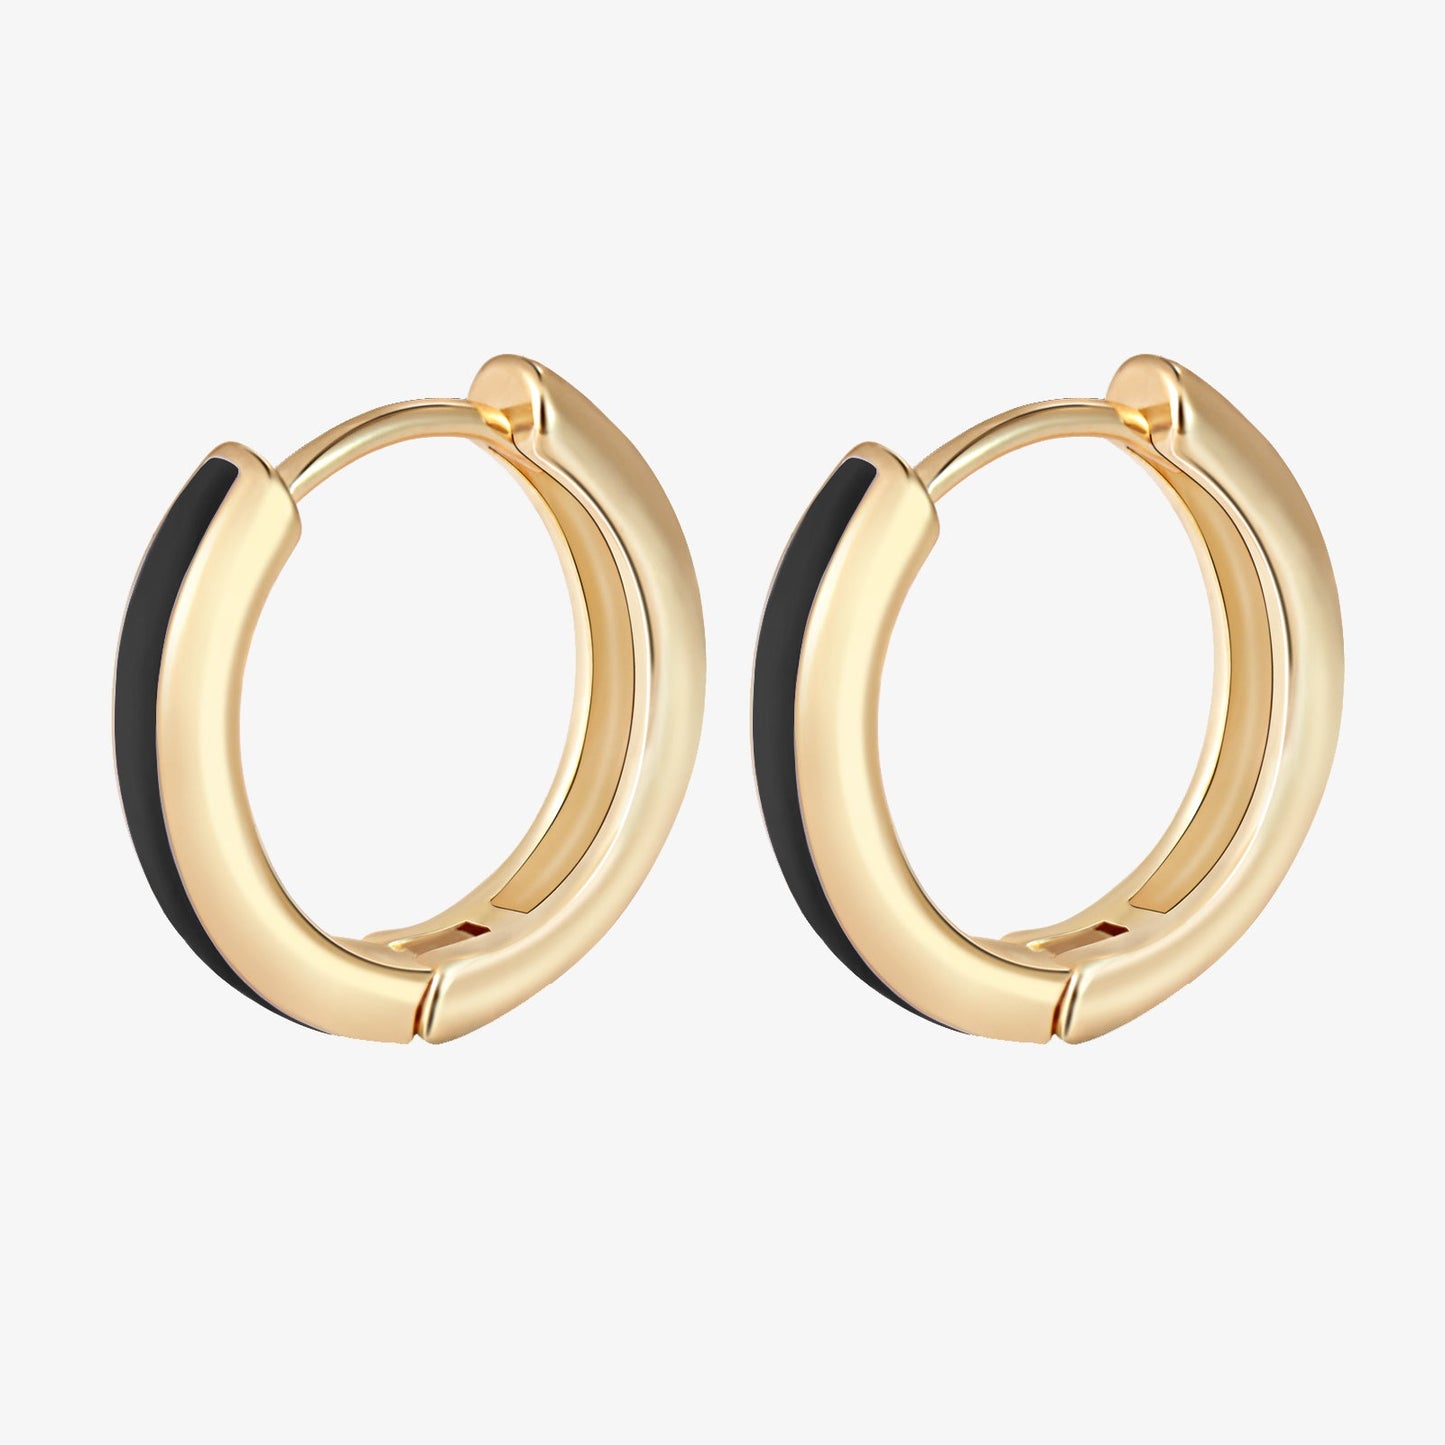 Black Enamel Gold Huggie Earrings Gift for Her